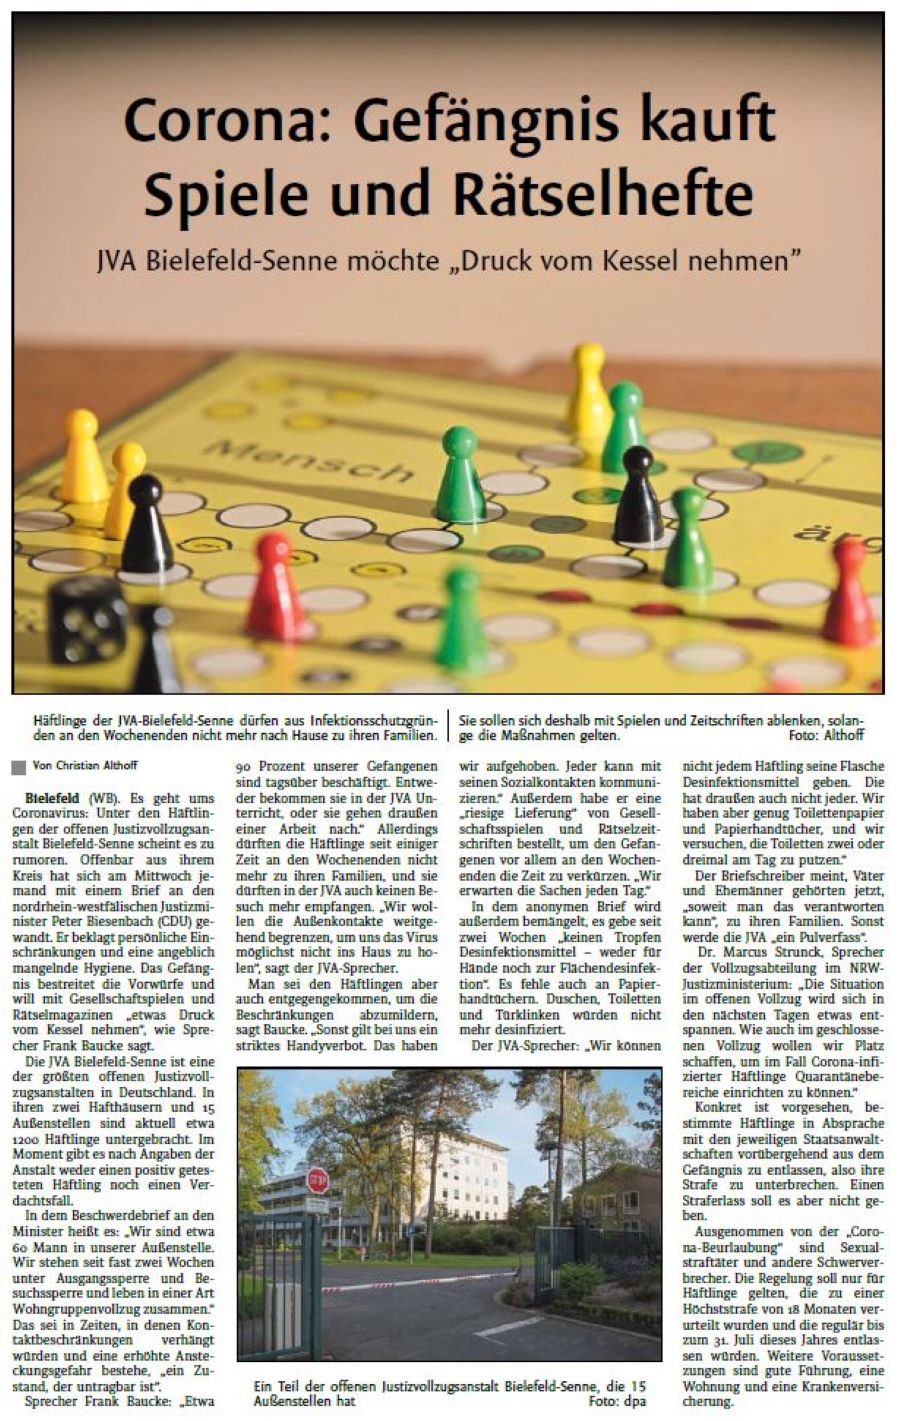 Zeitungsartikel Westfalen-Blatt vom 27.03.2020 Corona: Gefängnis kauft Spiele und Rätselhefte